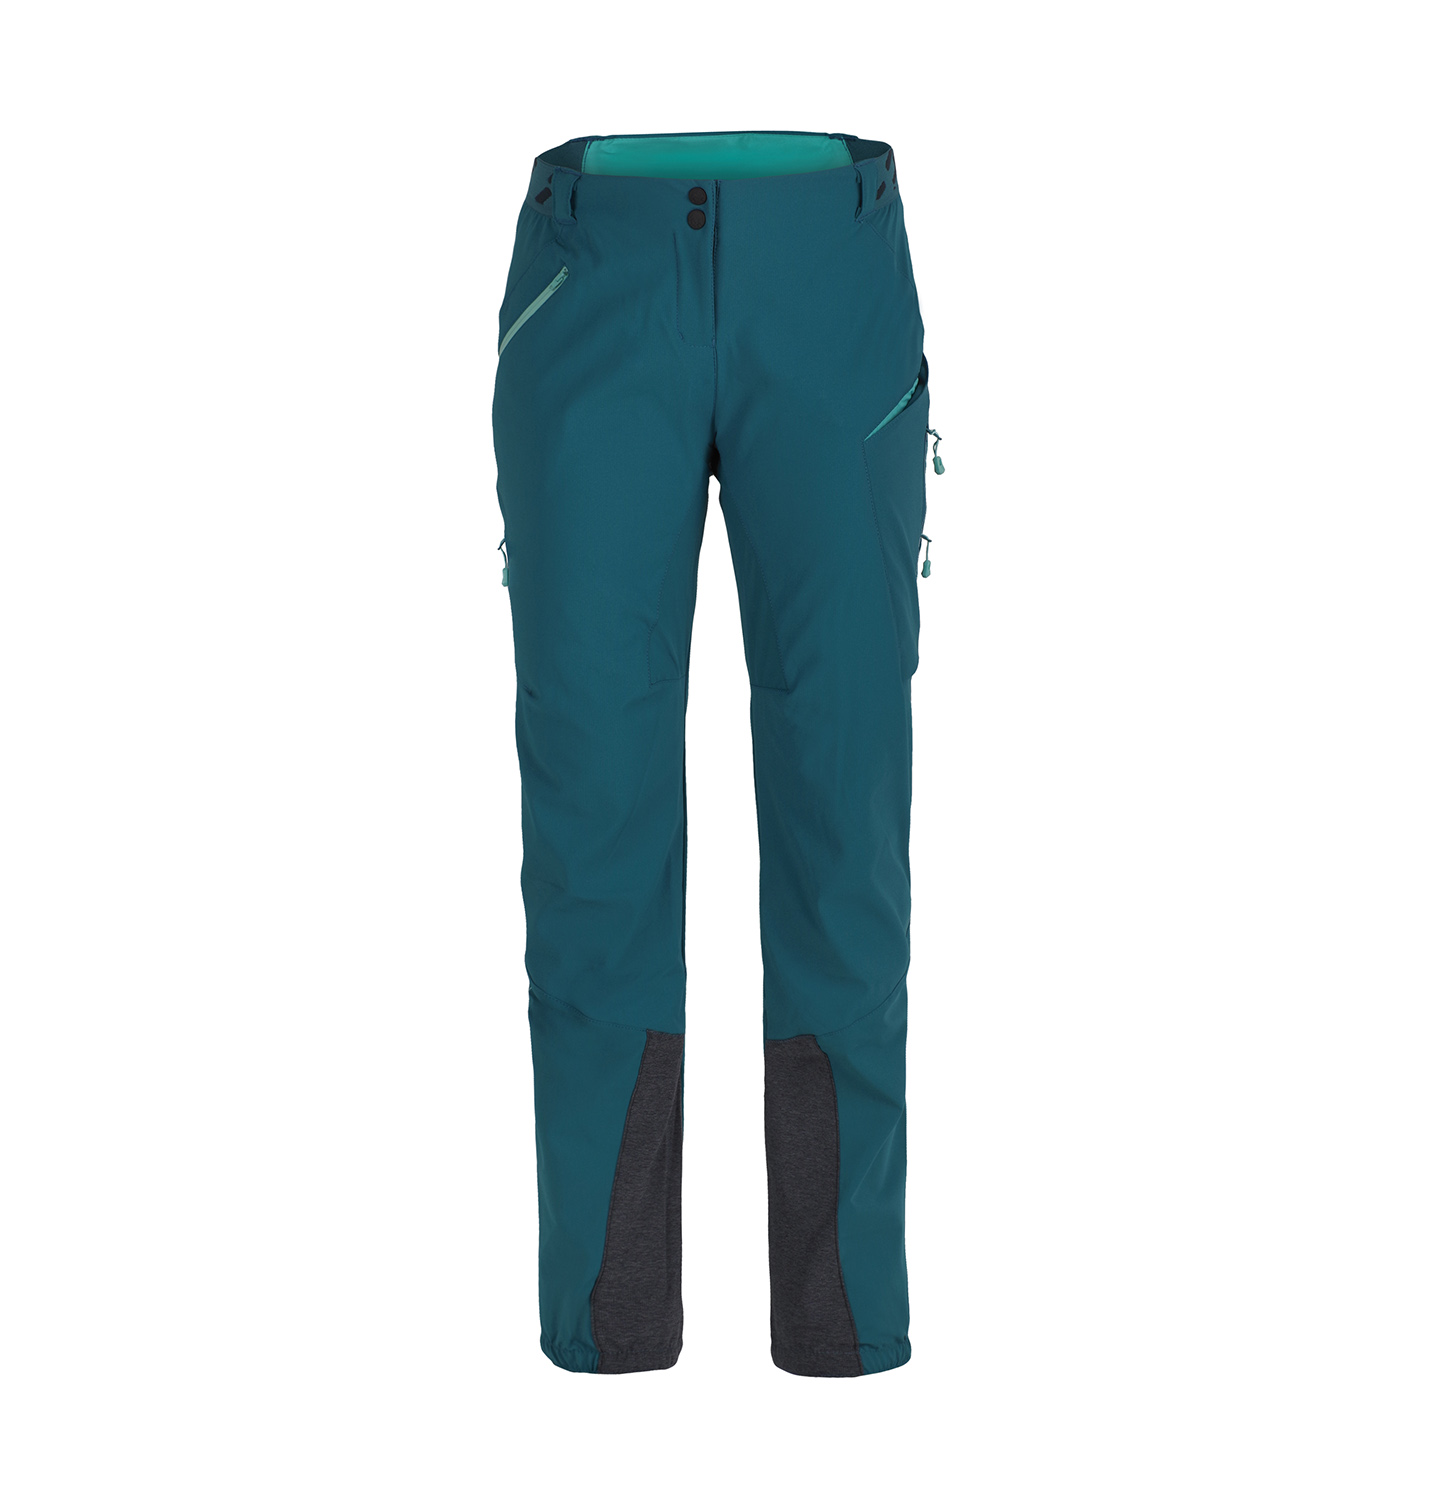 Dámské kalhoty Direct Alpine Rebel Lady 1.0 emerald/menthol XS